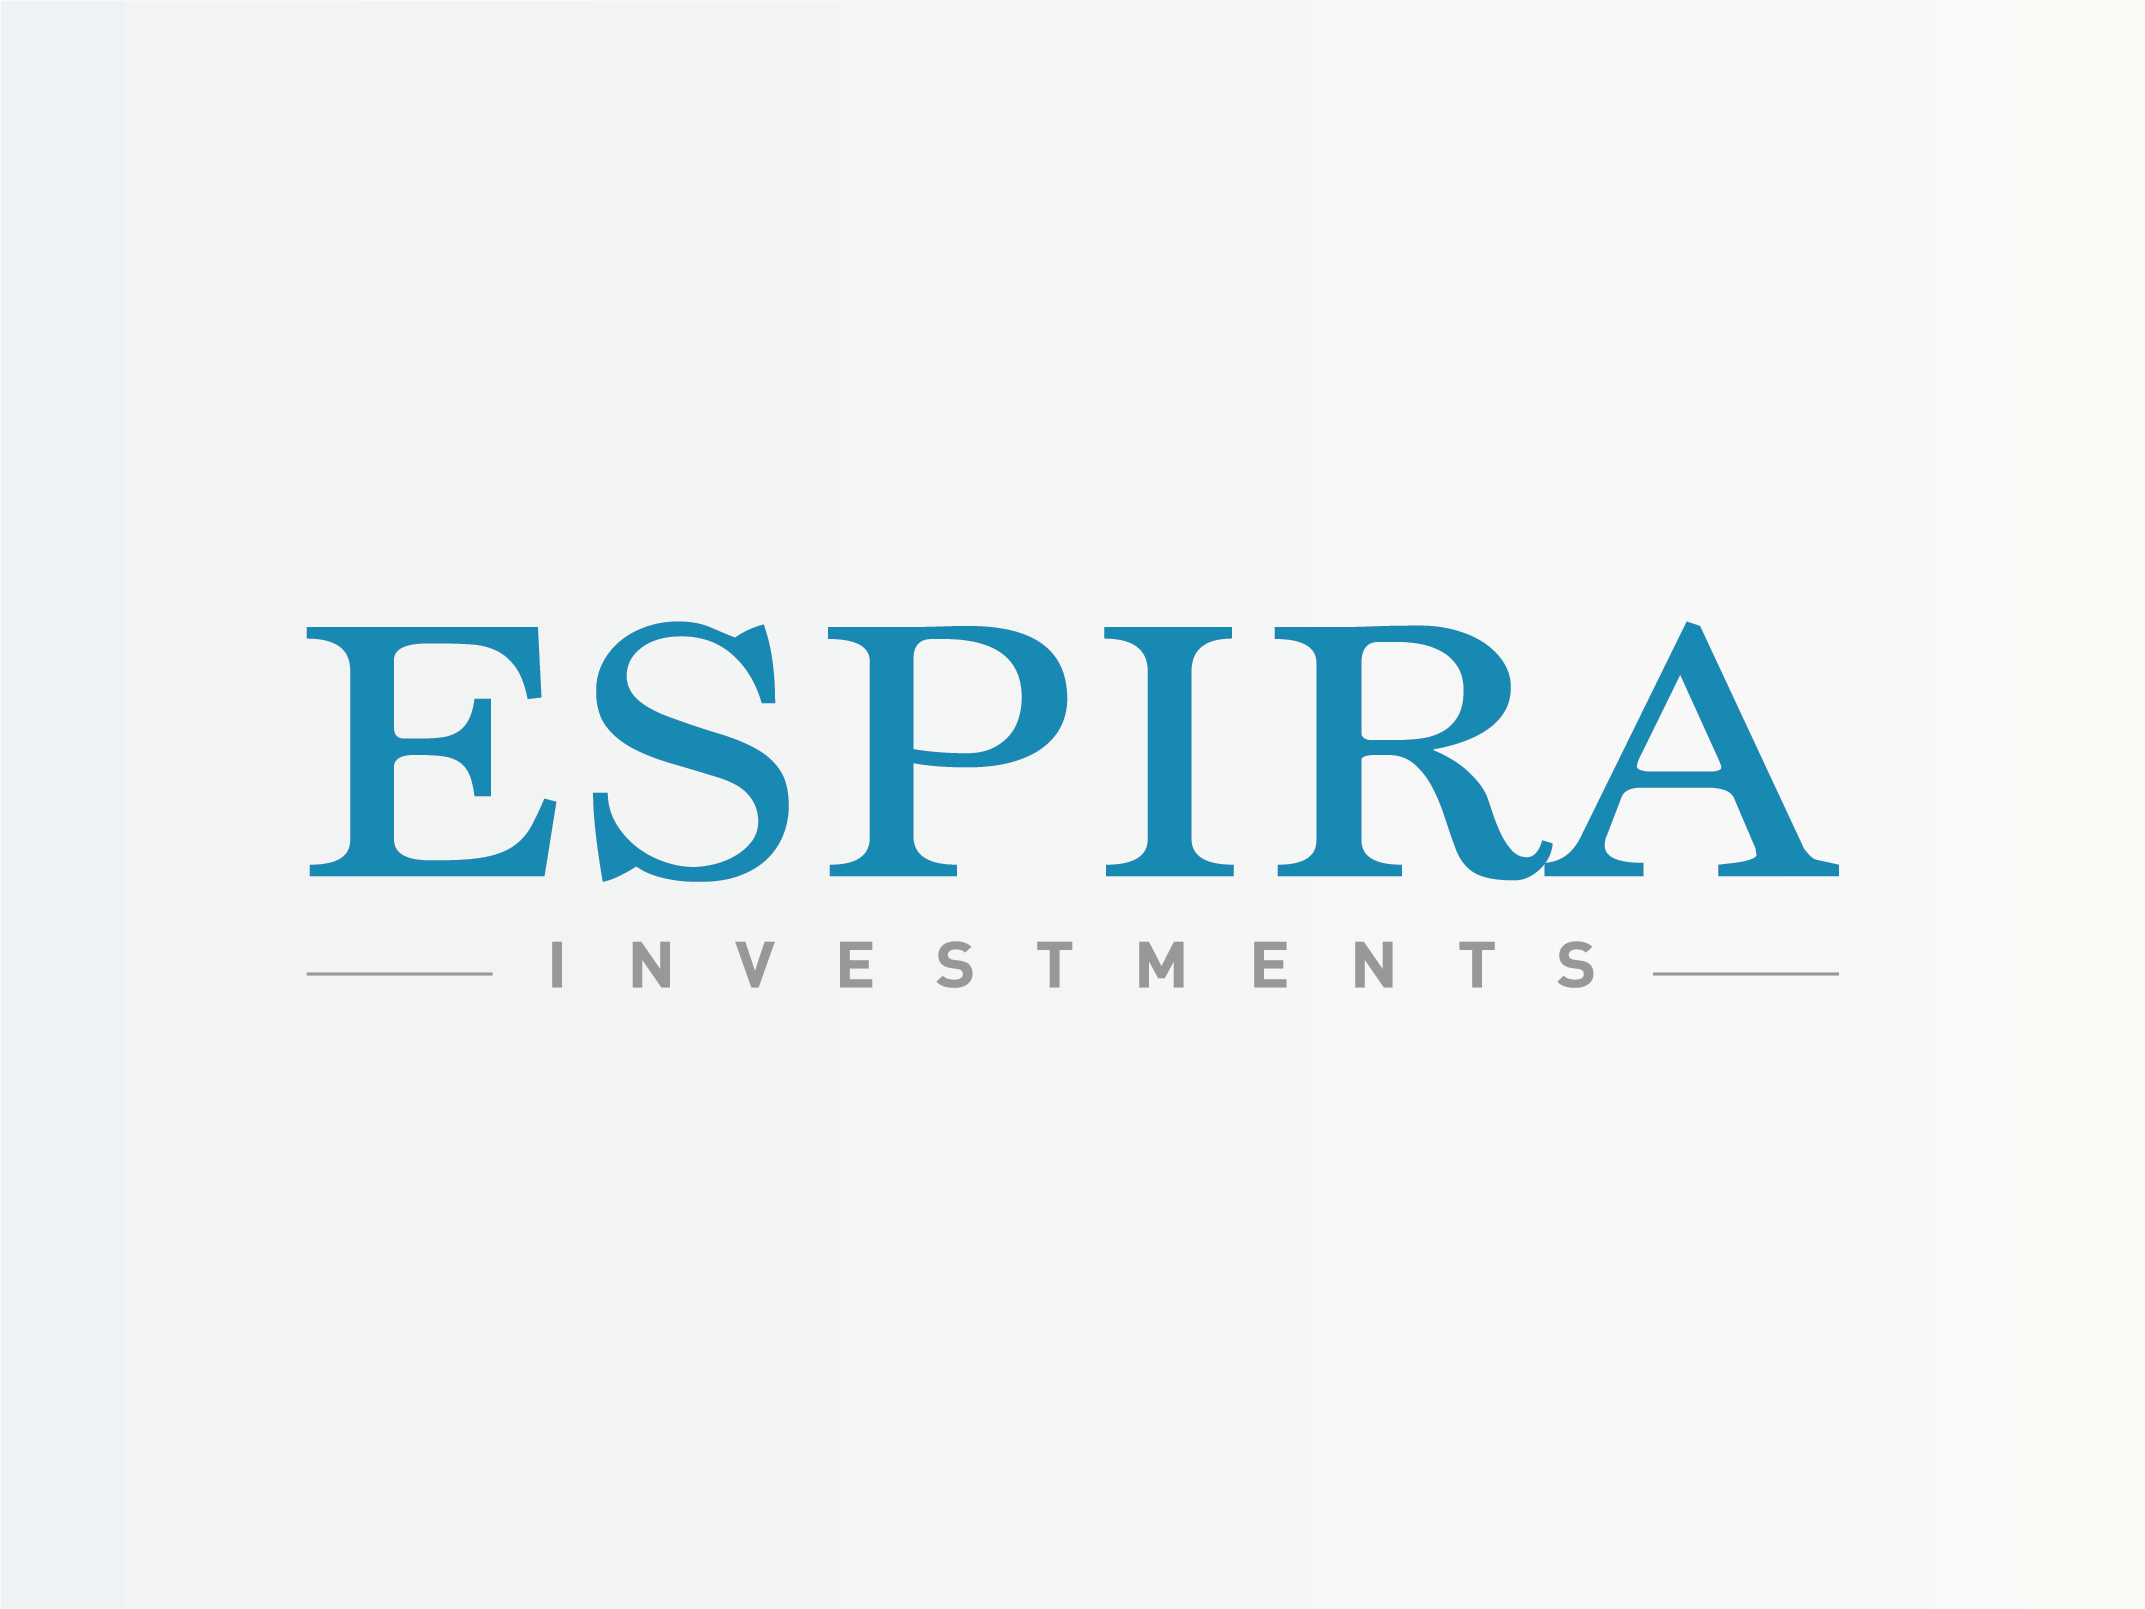 Espira Investments Otevírá Svůj První Fond Růstového Kapitálu Pro Střední Evropu